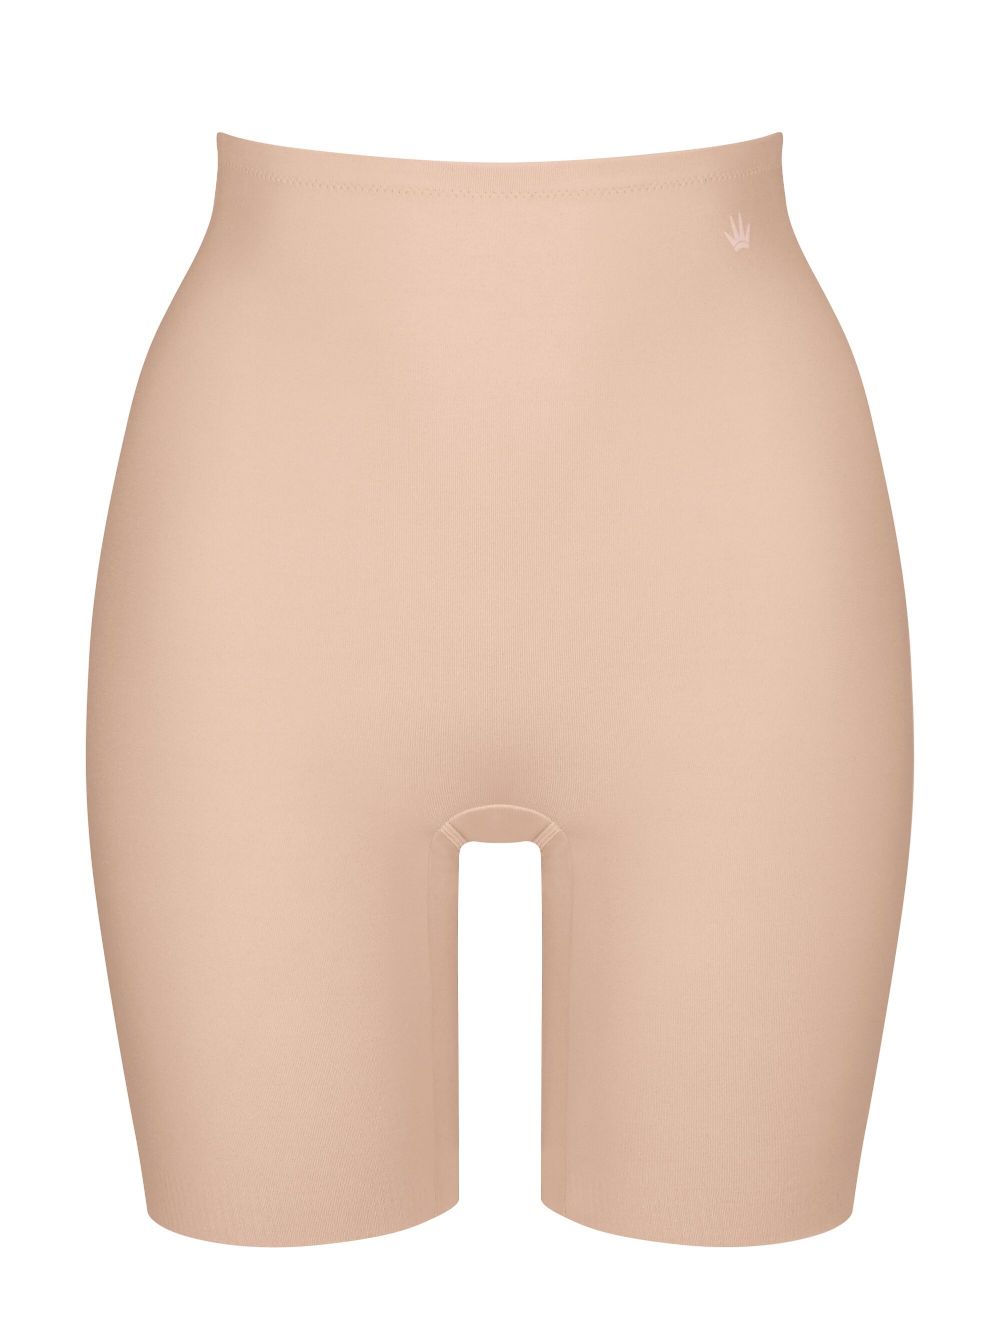 Panty Girdles - Triumph underwear − women's lingerie, shapewear & more